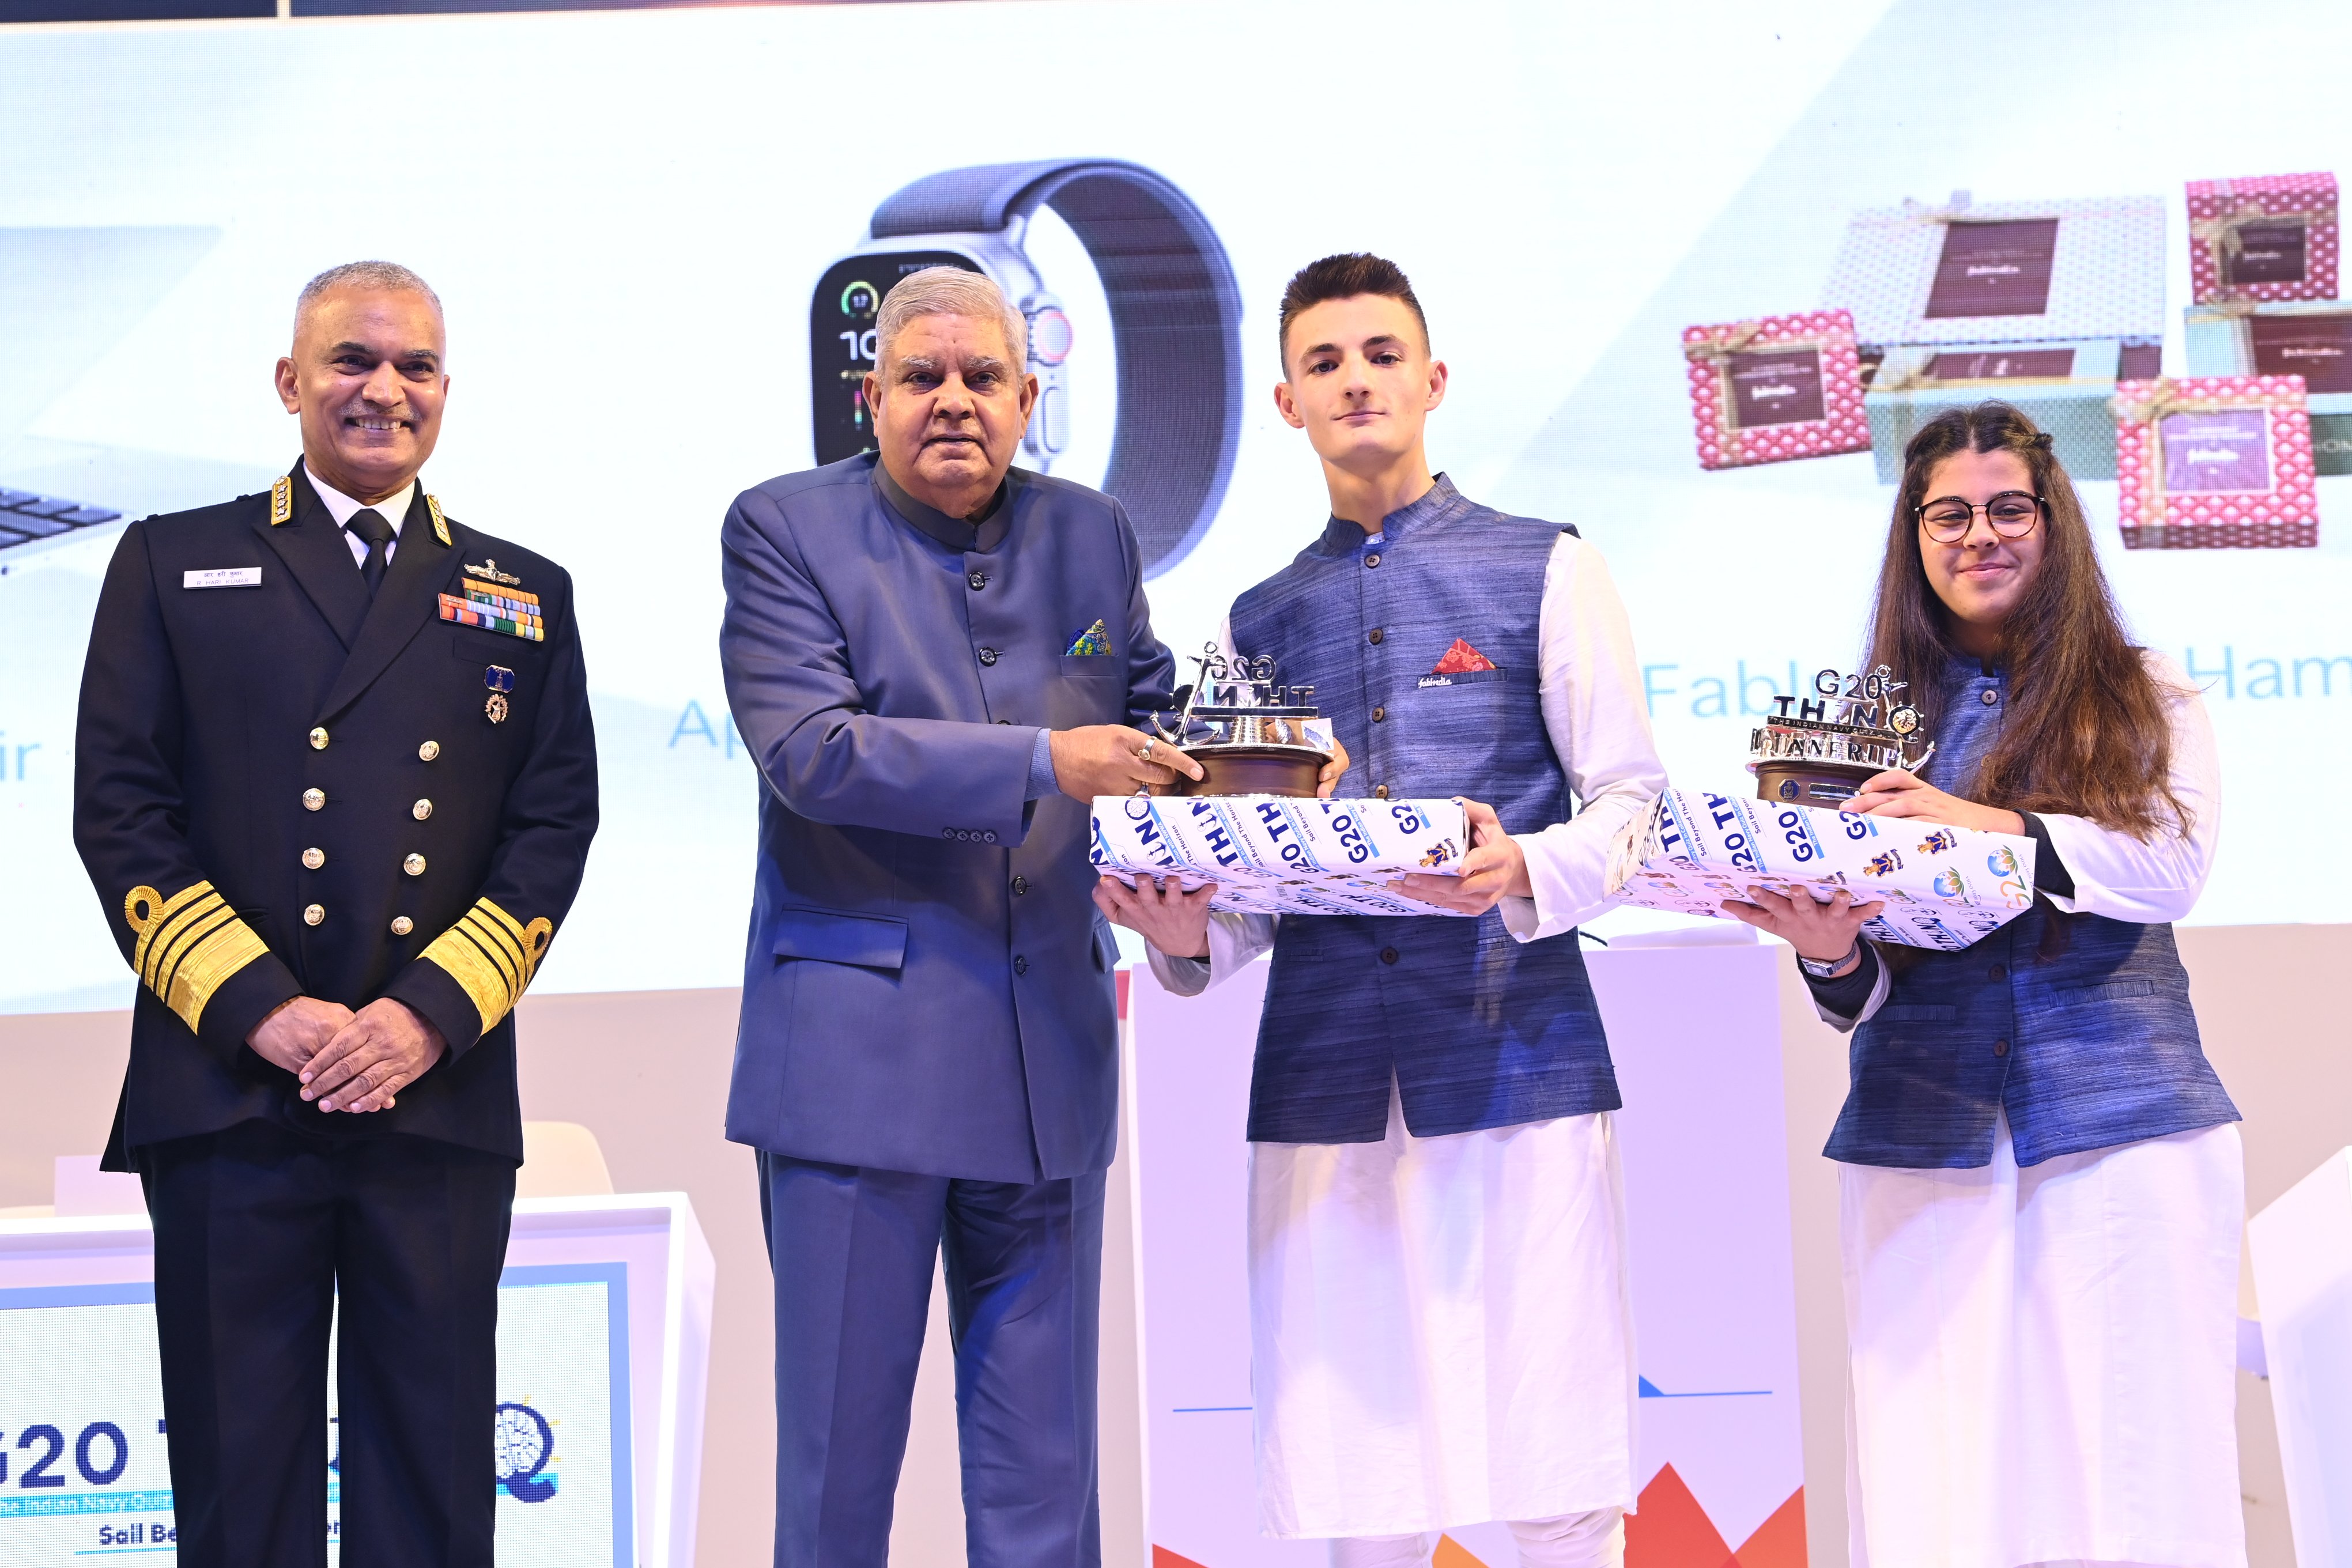 23 नवंबर 2023 को इंडिया गेट, नई दिल्ली में जी 20 थिनक्यू (भारतीय नौसेना क्विज) के विजेताओं को पुरस्कार प्रदान करते हुए उपराष्ट्रपति श्री जगदीप धनखड़। 